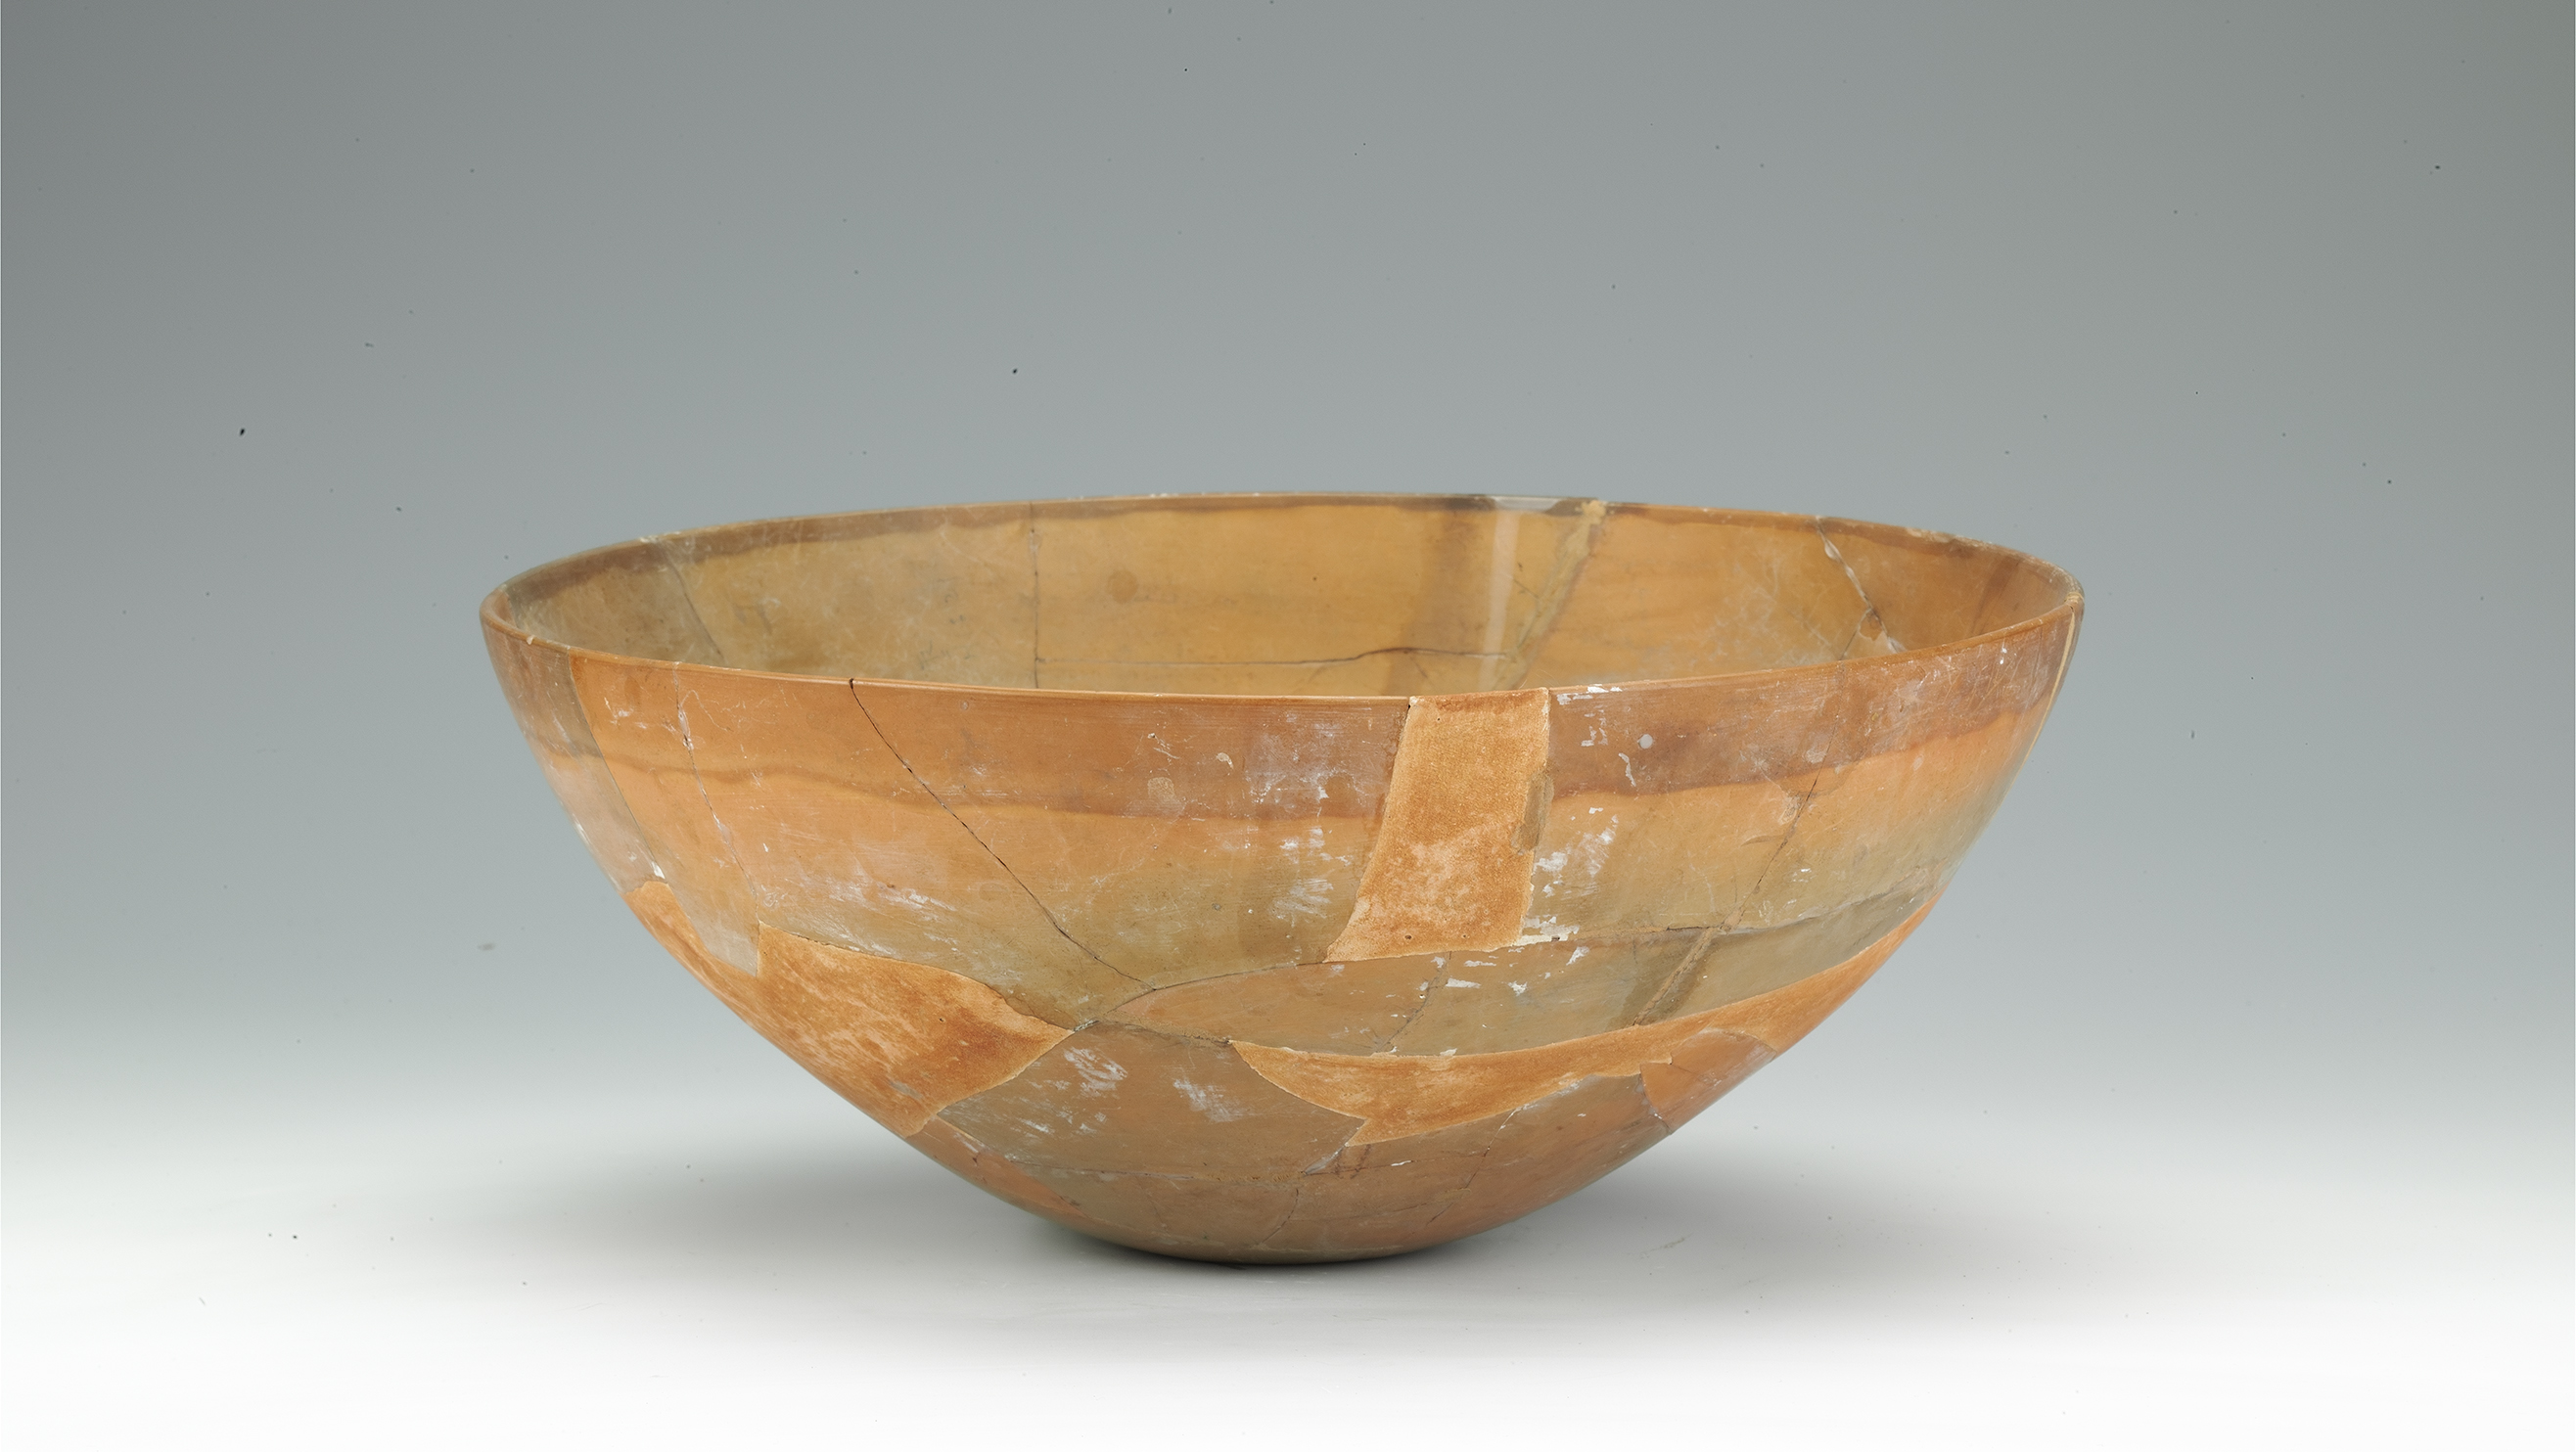 A pottery bowl